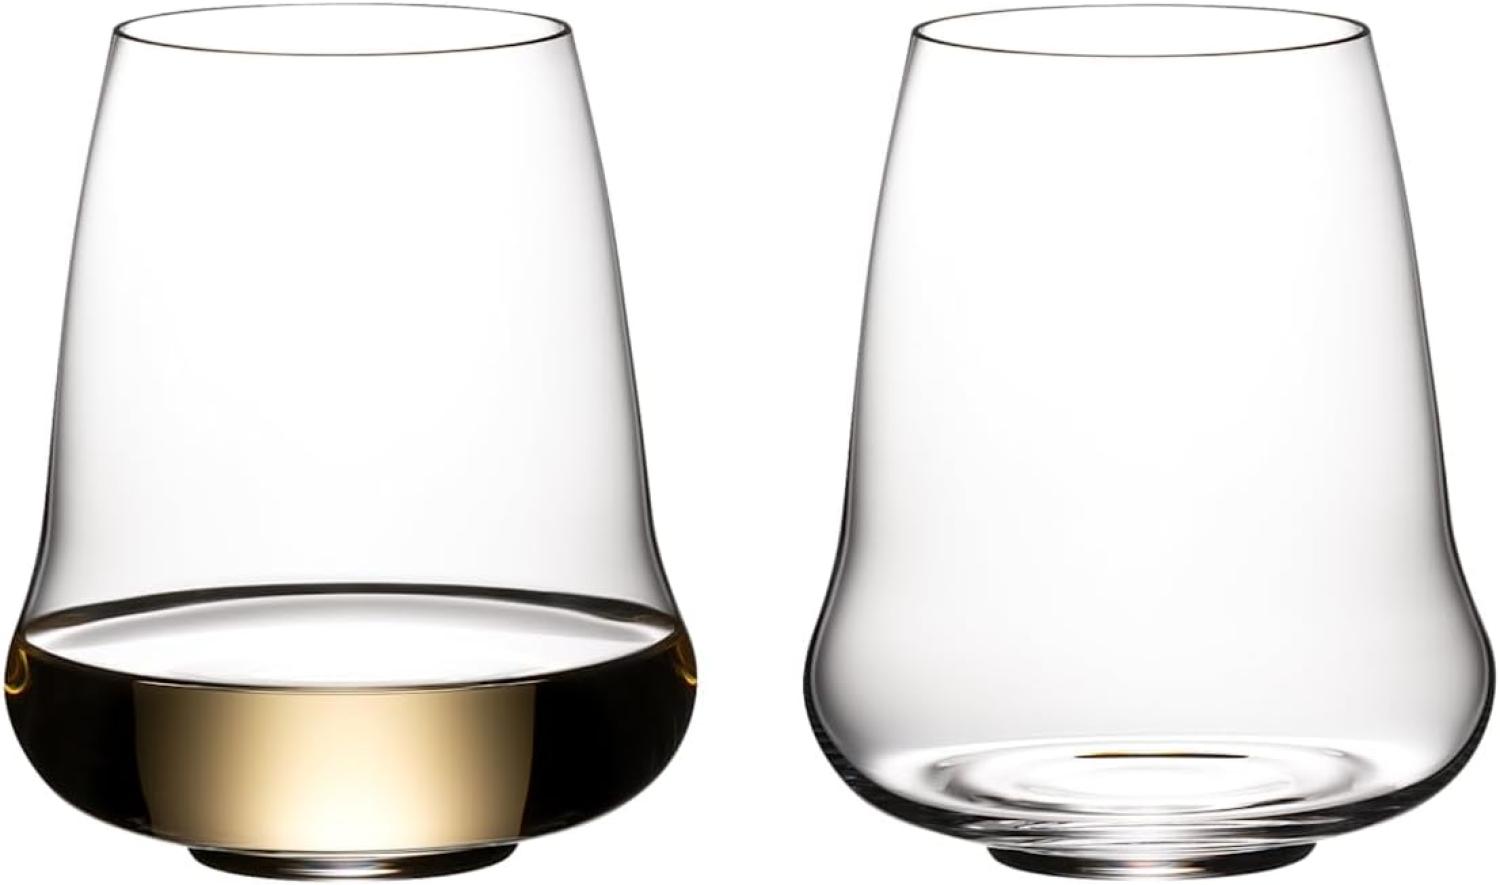 Riedel SL Stemless Wing Riesling / Champagne Glass, 2er Set, Weißweinglas, Weißwein Glas, Weinglas, Champagnerglas, Kristallglas, 6789/15 Bild 1